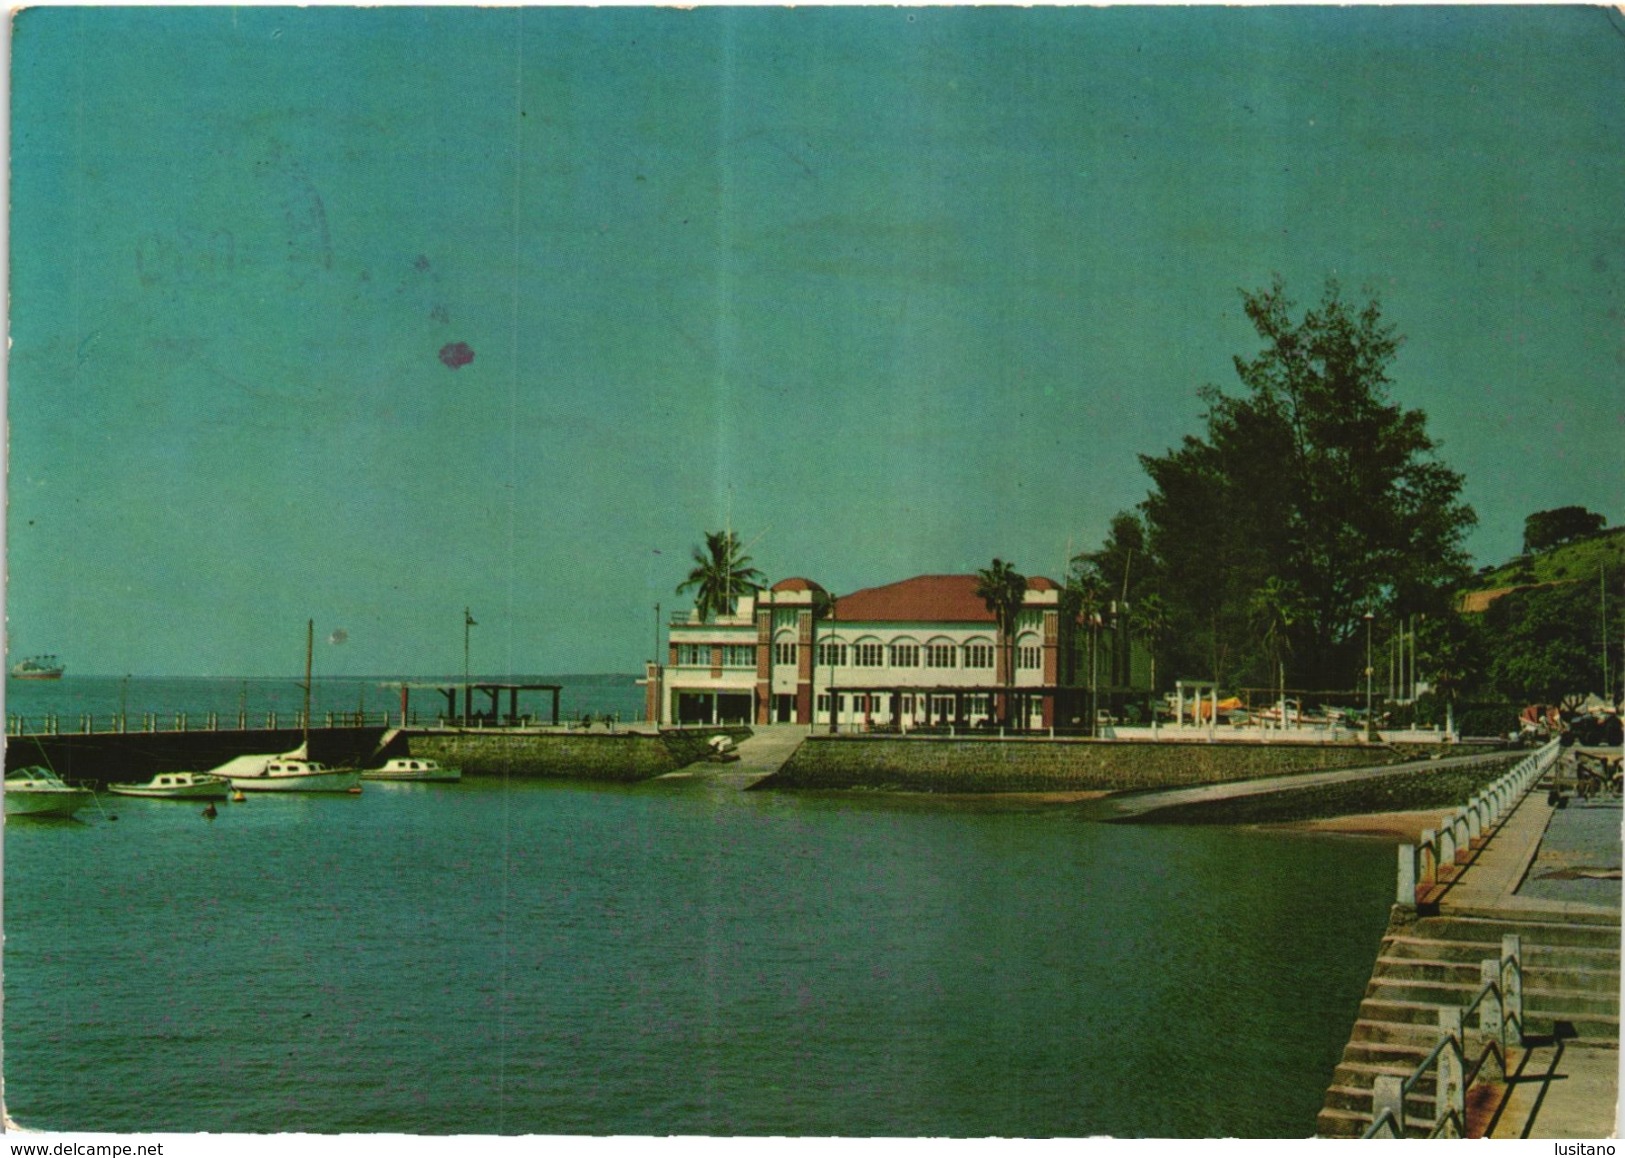 Mozambique Moçambique - Lourenço Marques Club Naval - Yatch Club - 1960/70s Postcard - Mozambique